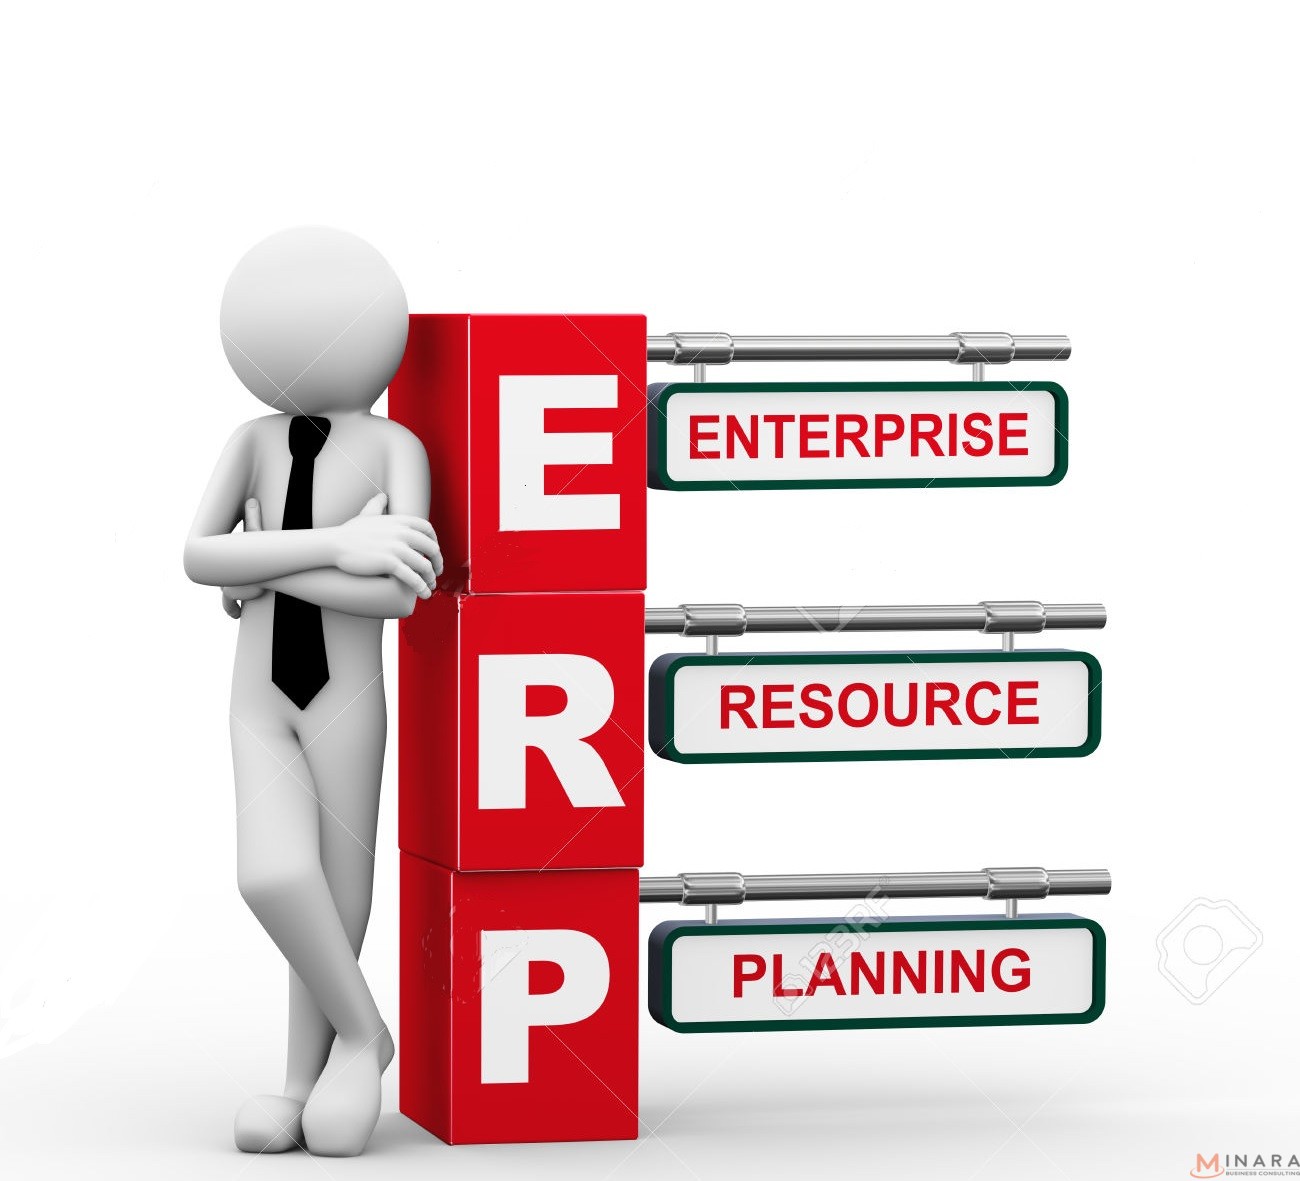 6 lợi ích mà giải pháp ERP cho doanh nghiệp sản xuất đem lại